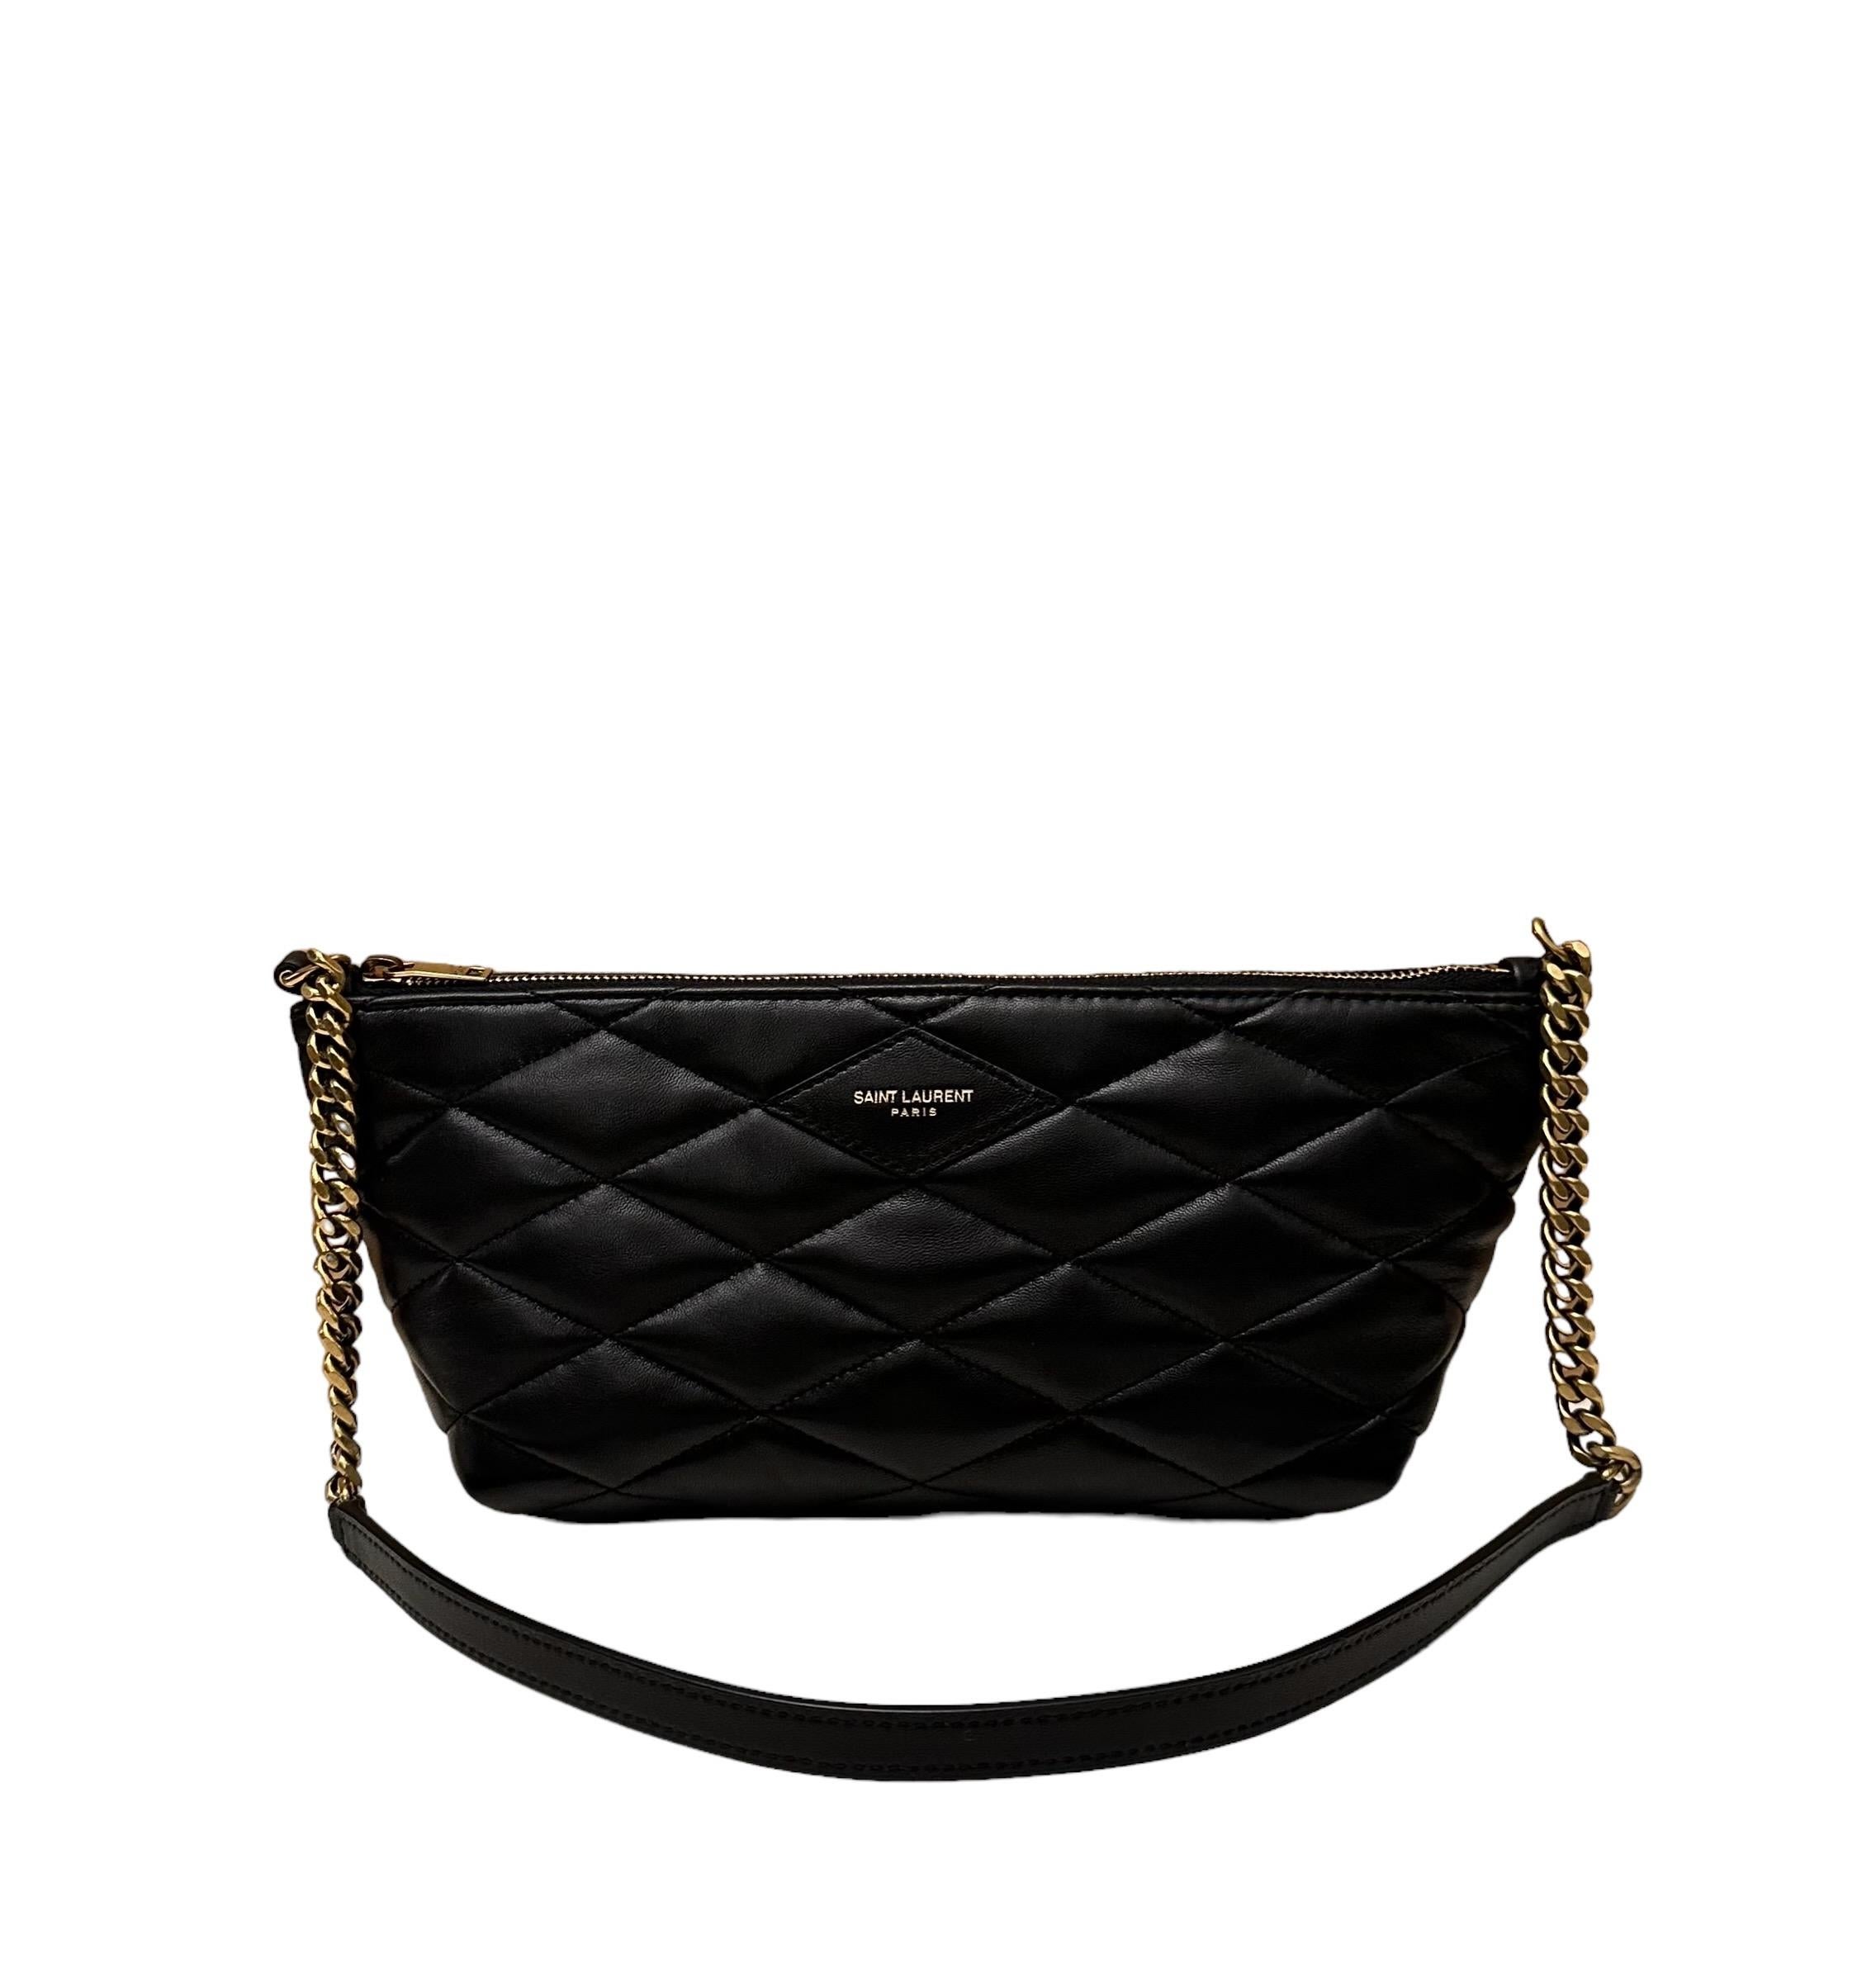 Saint Laurent Sade Mini Black Quilted Leather Shoulder Bag 2